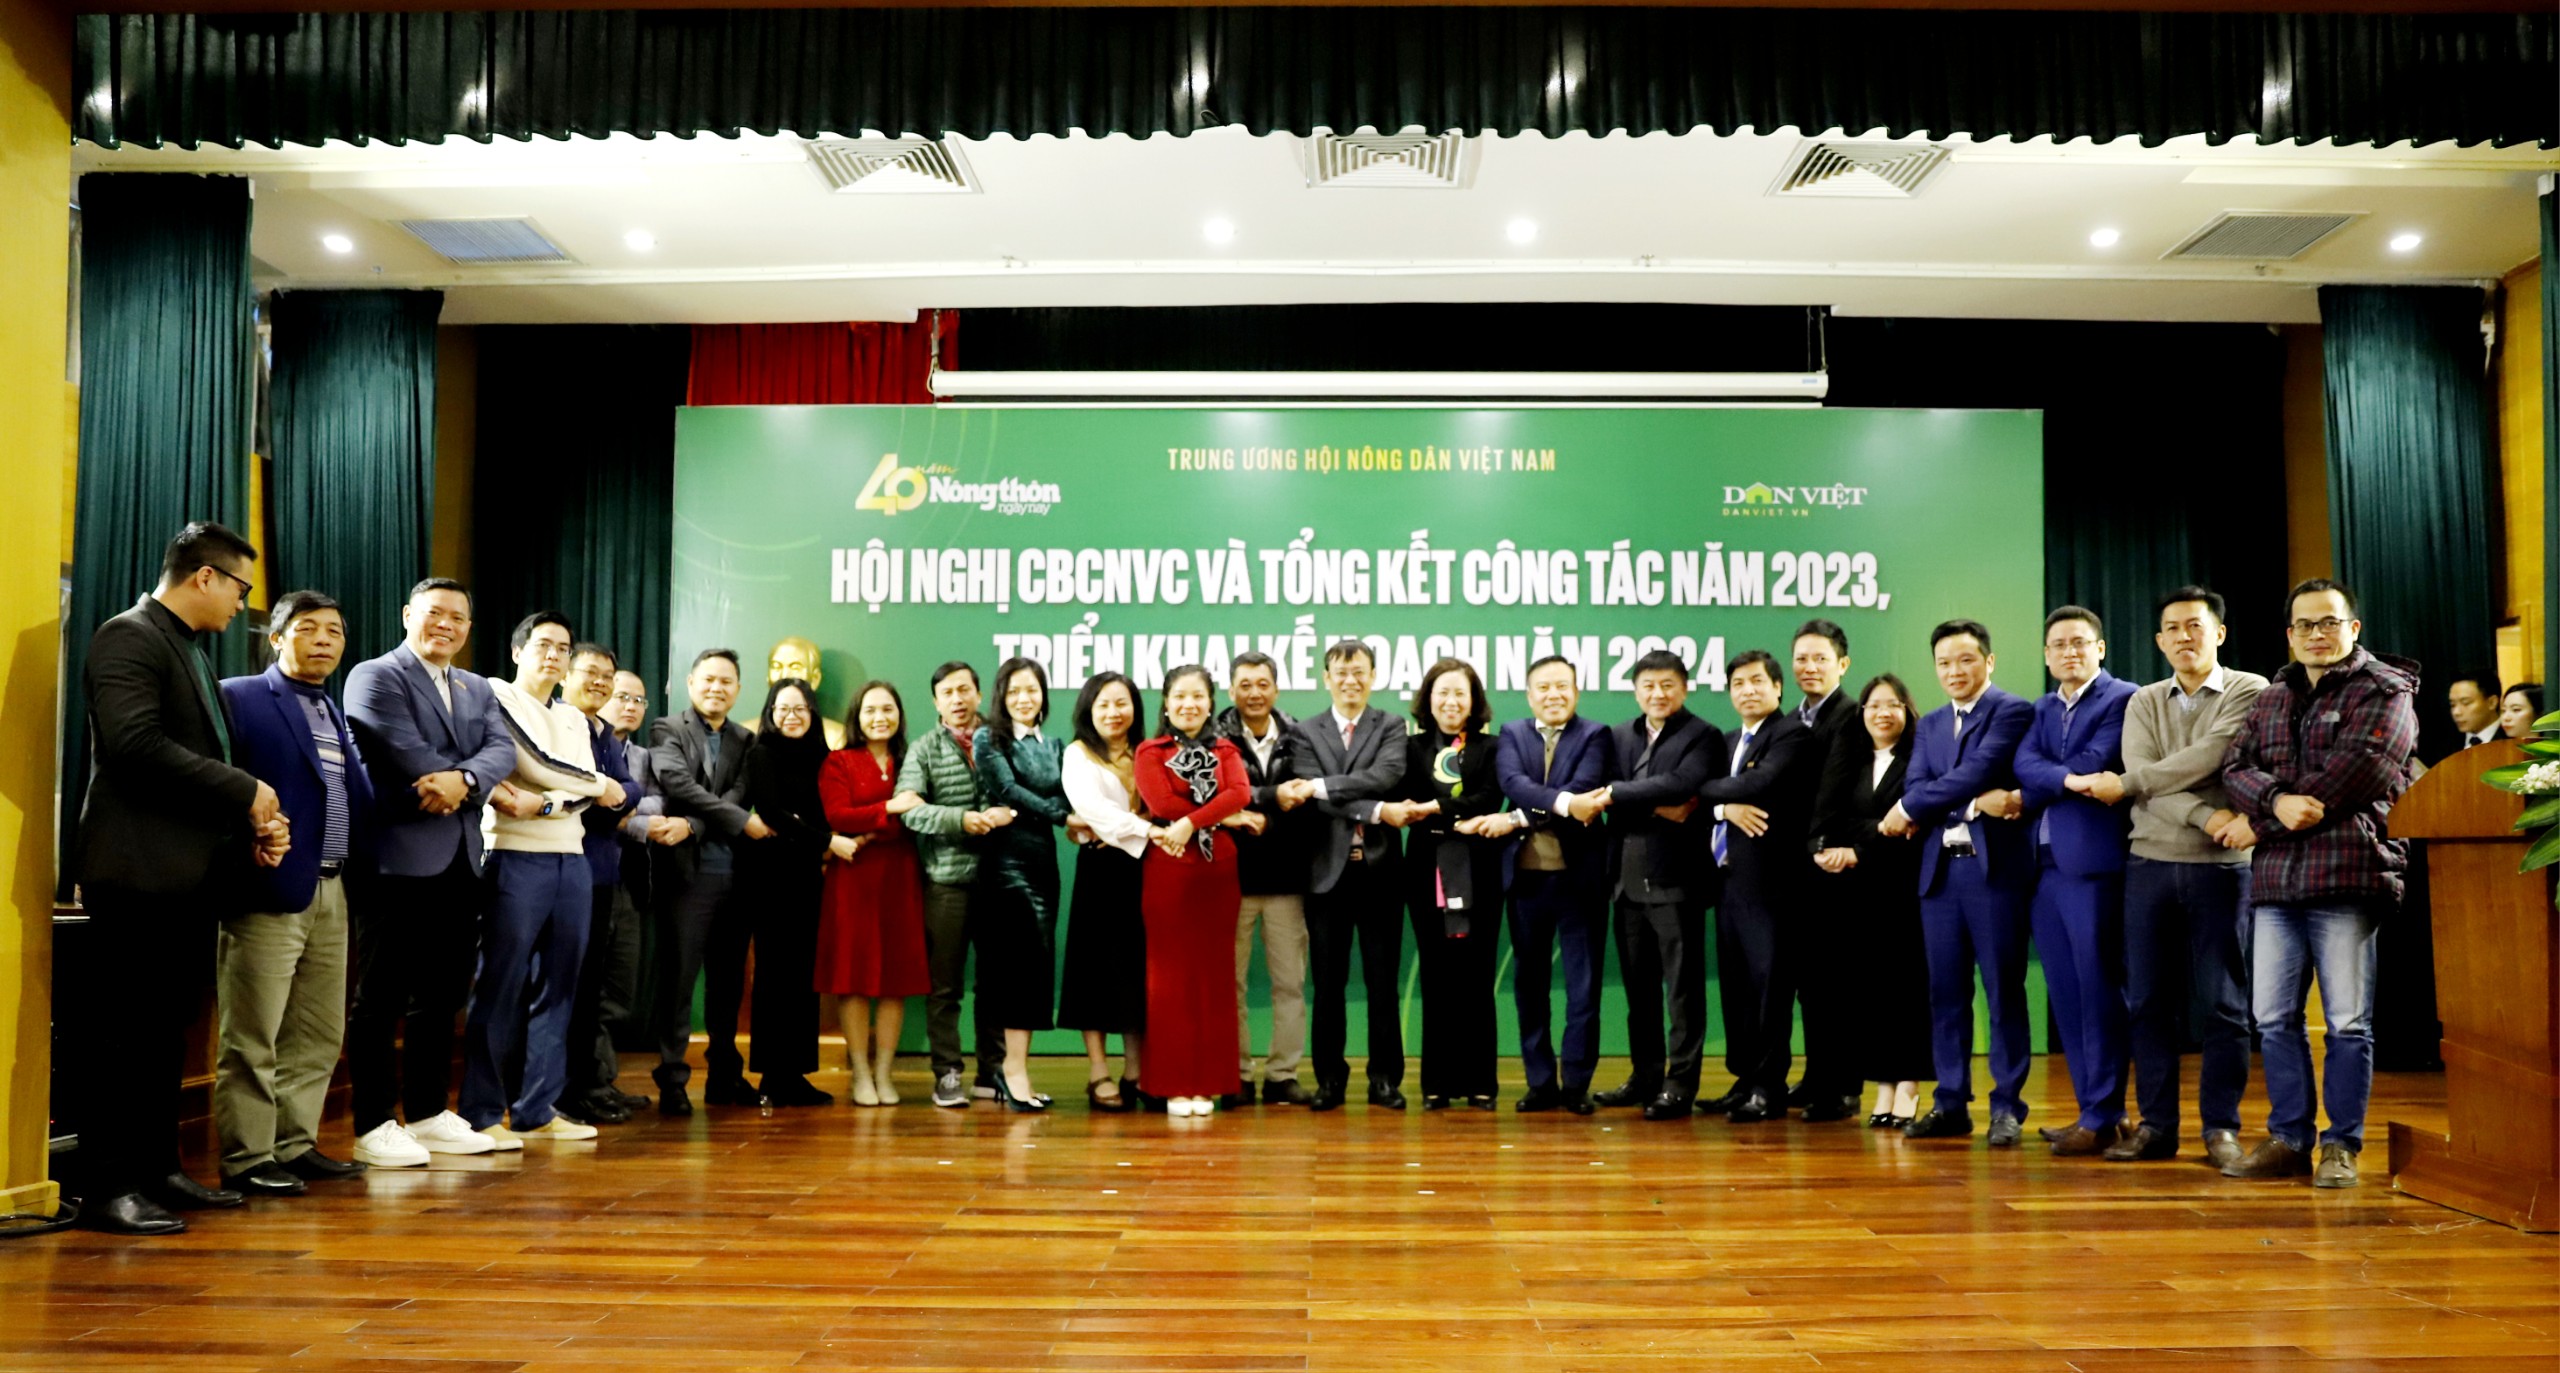 Phó Chủ tịch Hội NDVN Bùi Thị Thơm: Báo NTNN/Dân Việt xứng đáng là tờ báo hàng đầu về nông dân, nông nghiệp, nông thôn- Ảnh 4.